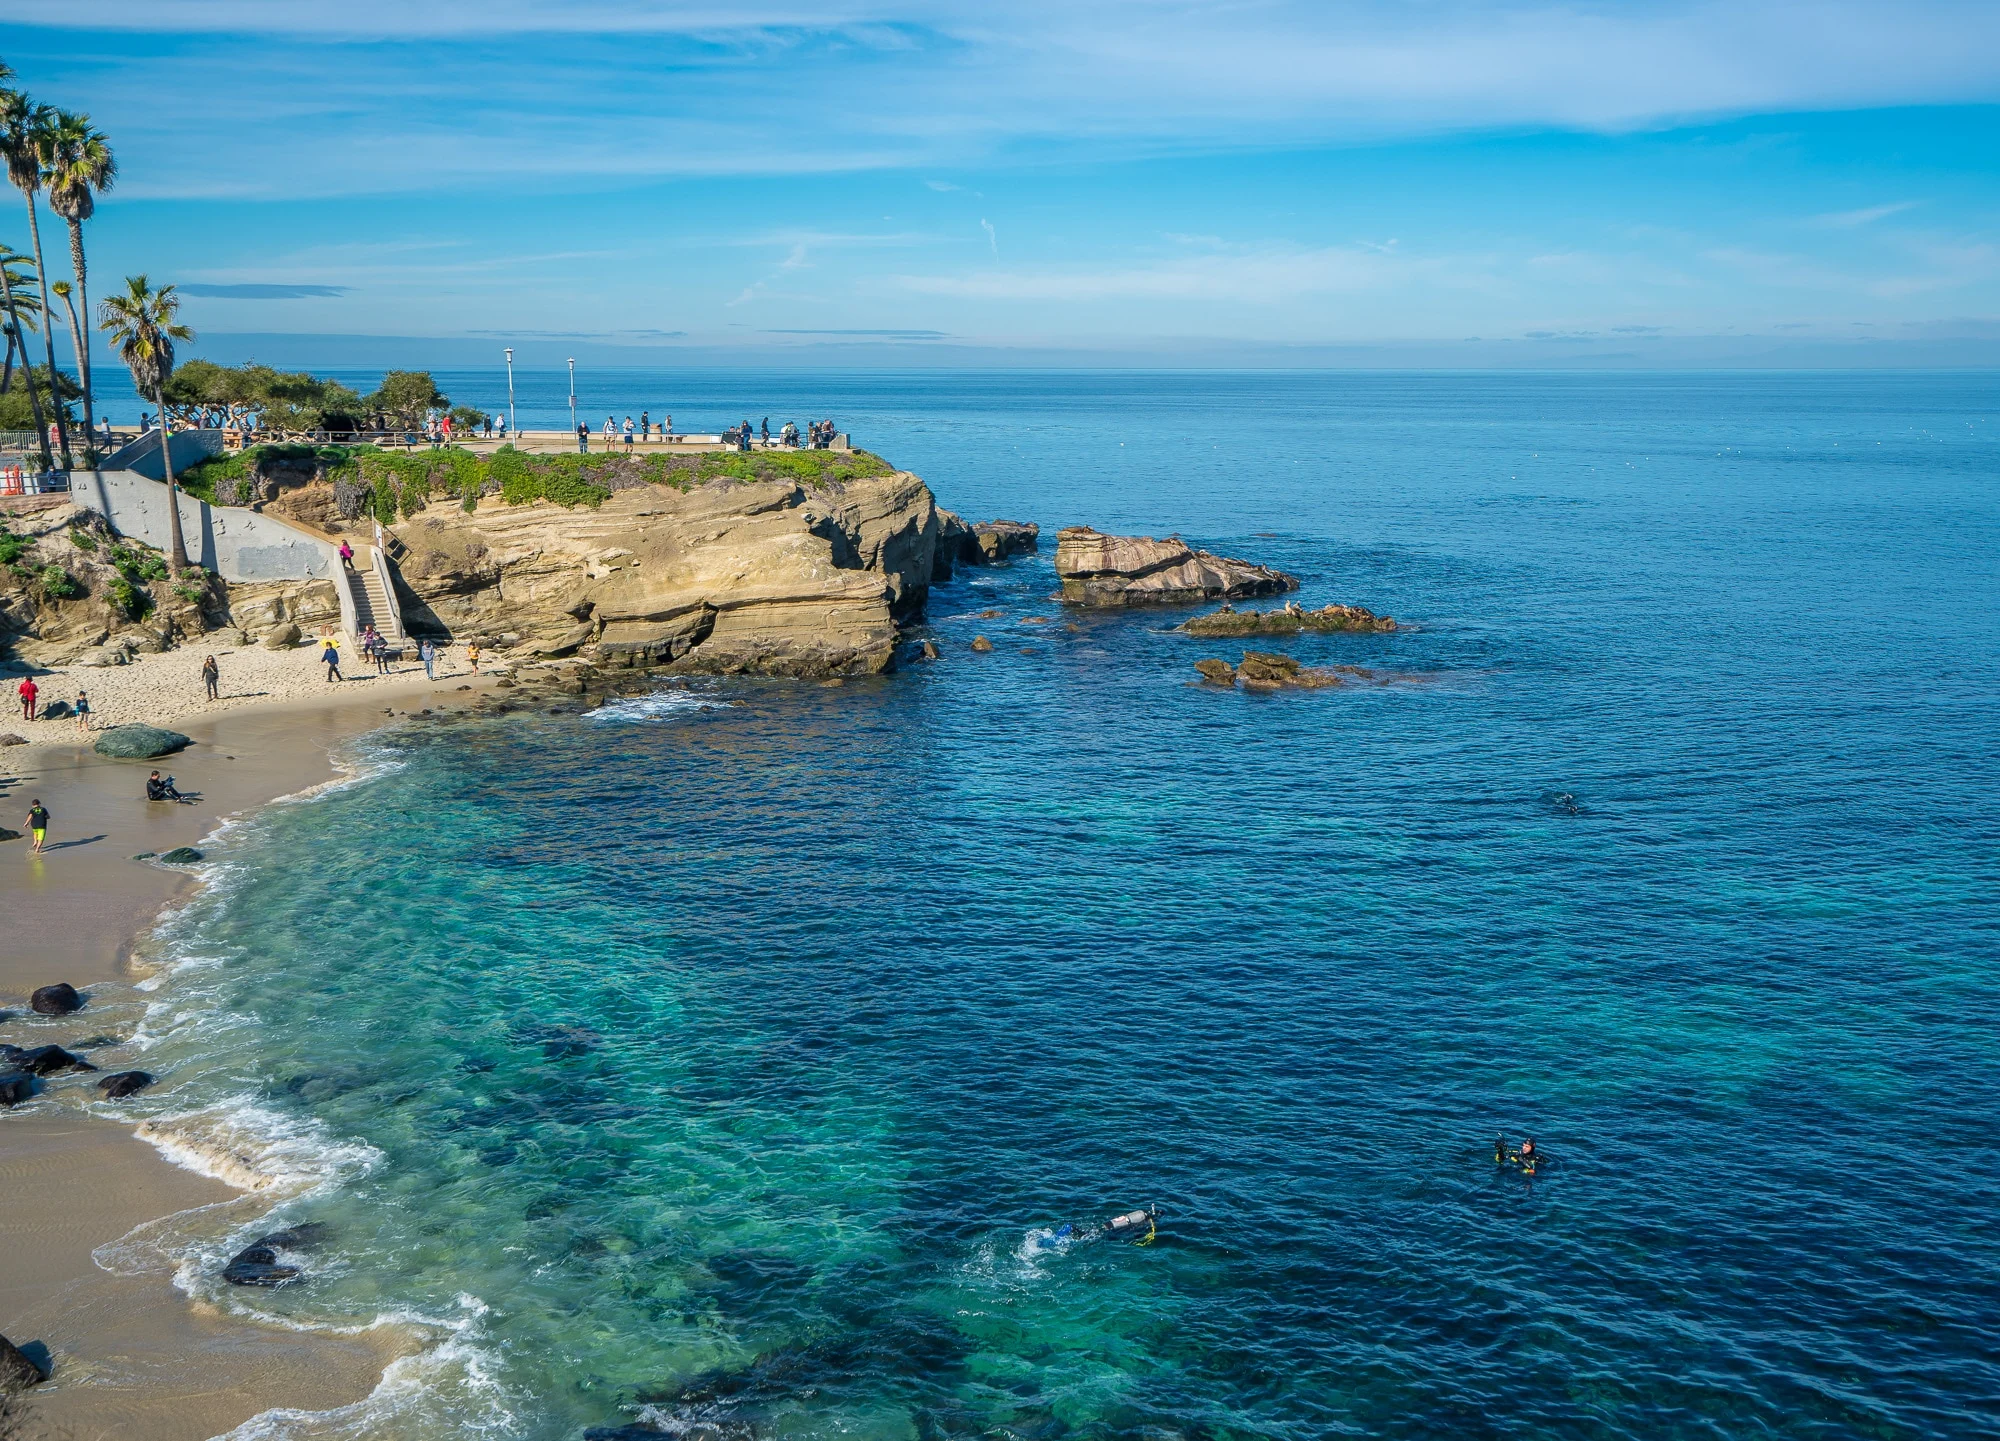 La Jolla Cove, una playa ubicada en la costa de San Diego, ha sido nombrada como la playa más hermosa de Estados Unidos, según un estudio realizado por Florida Rentals, una empresa estadounidense que gestiona rentas para vacacionar. La playa californiana superó a otras icónicas costas estadounidenses como South Beach en Florida y Laguna Beach en California.